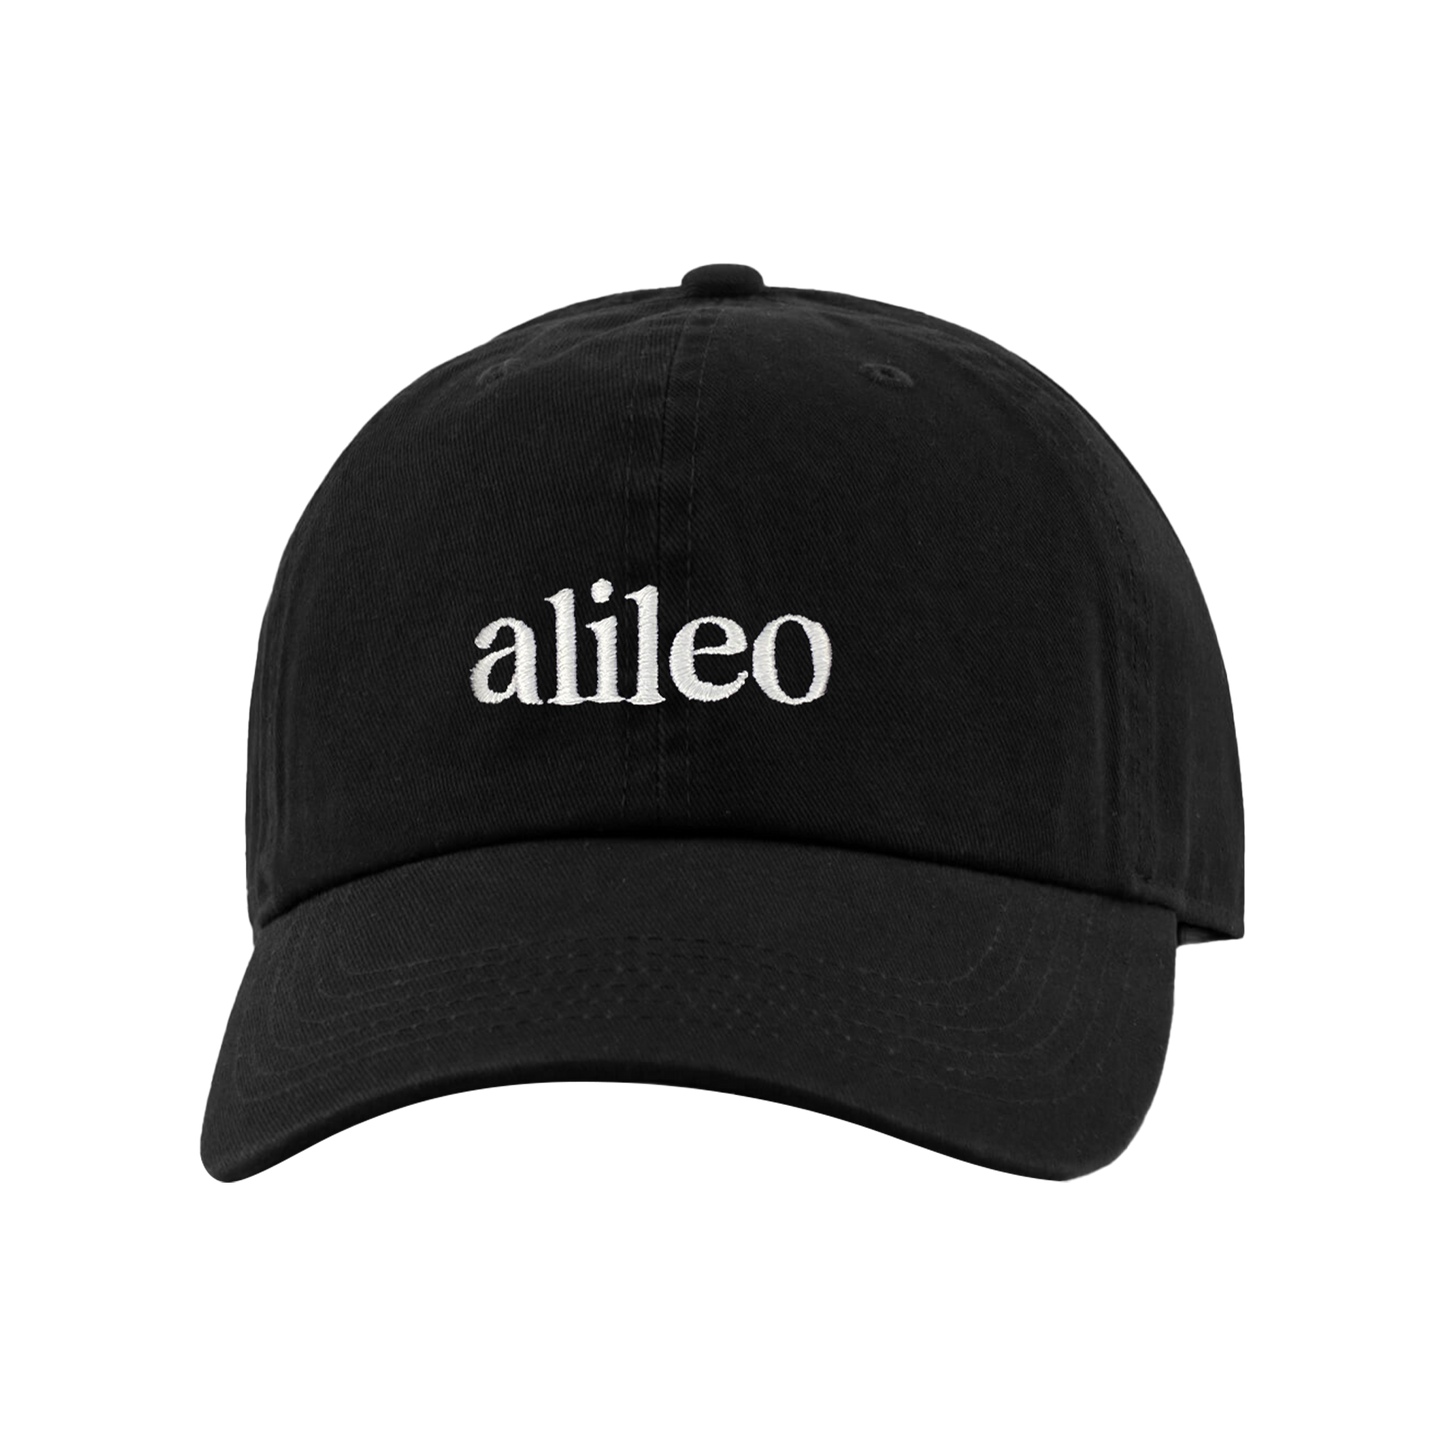 Alileo Vintners Cap